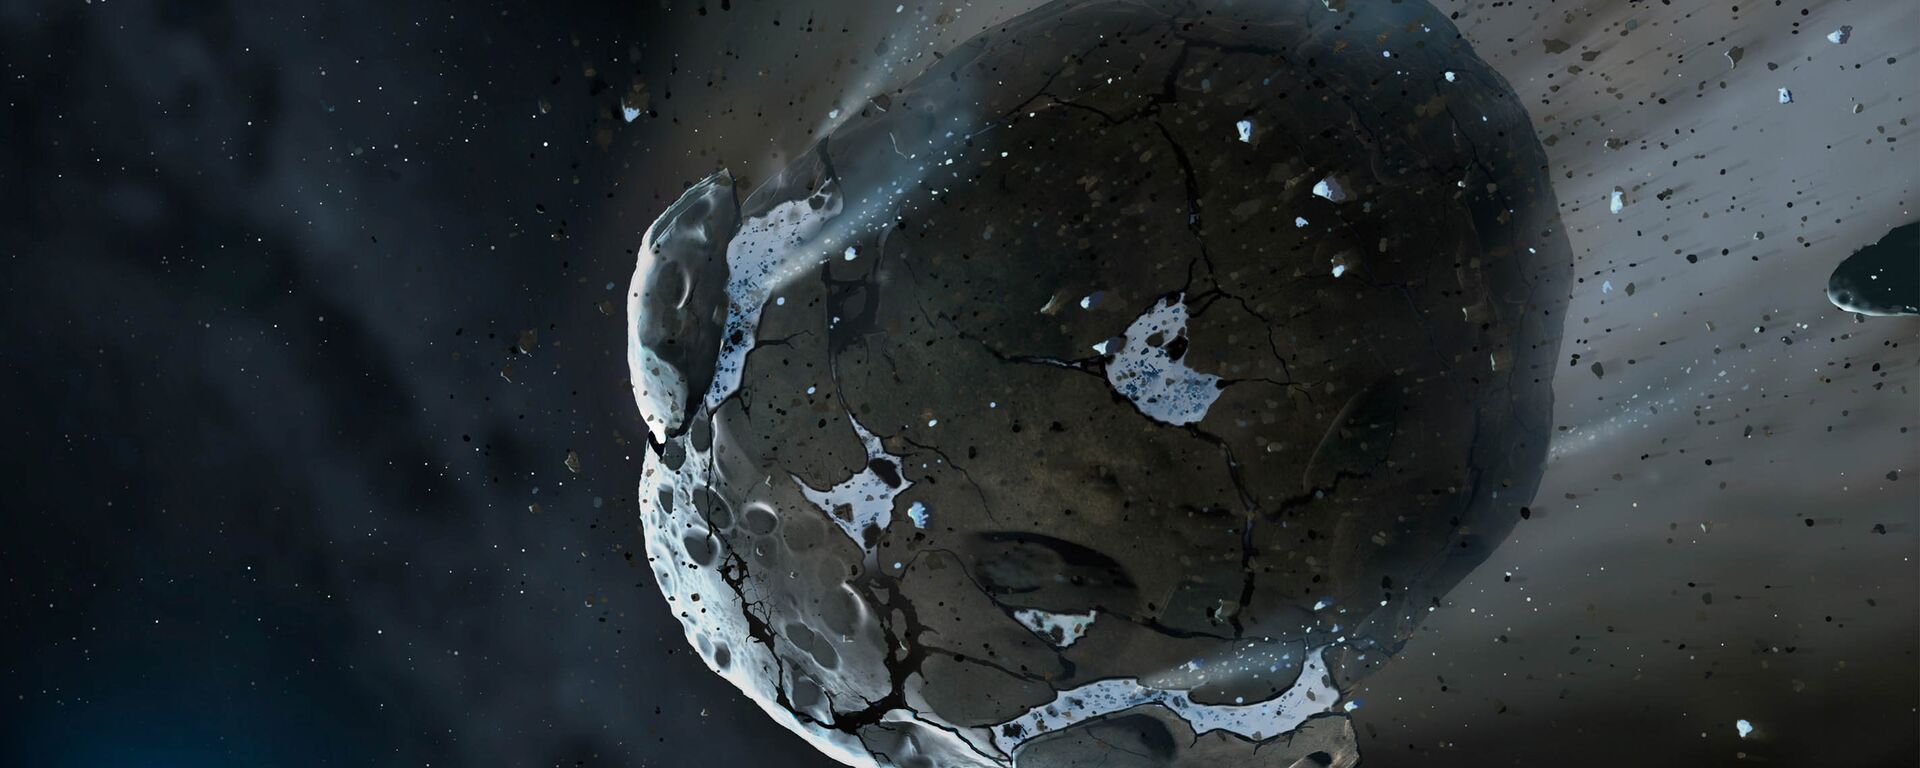 Астероид, архивное фото - Sputnik Армения, 1920, 12.11.2021